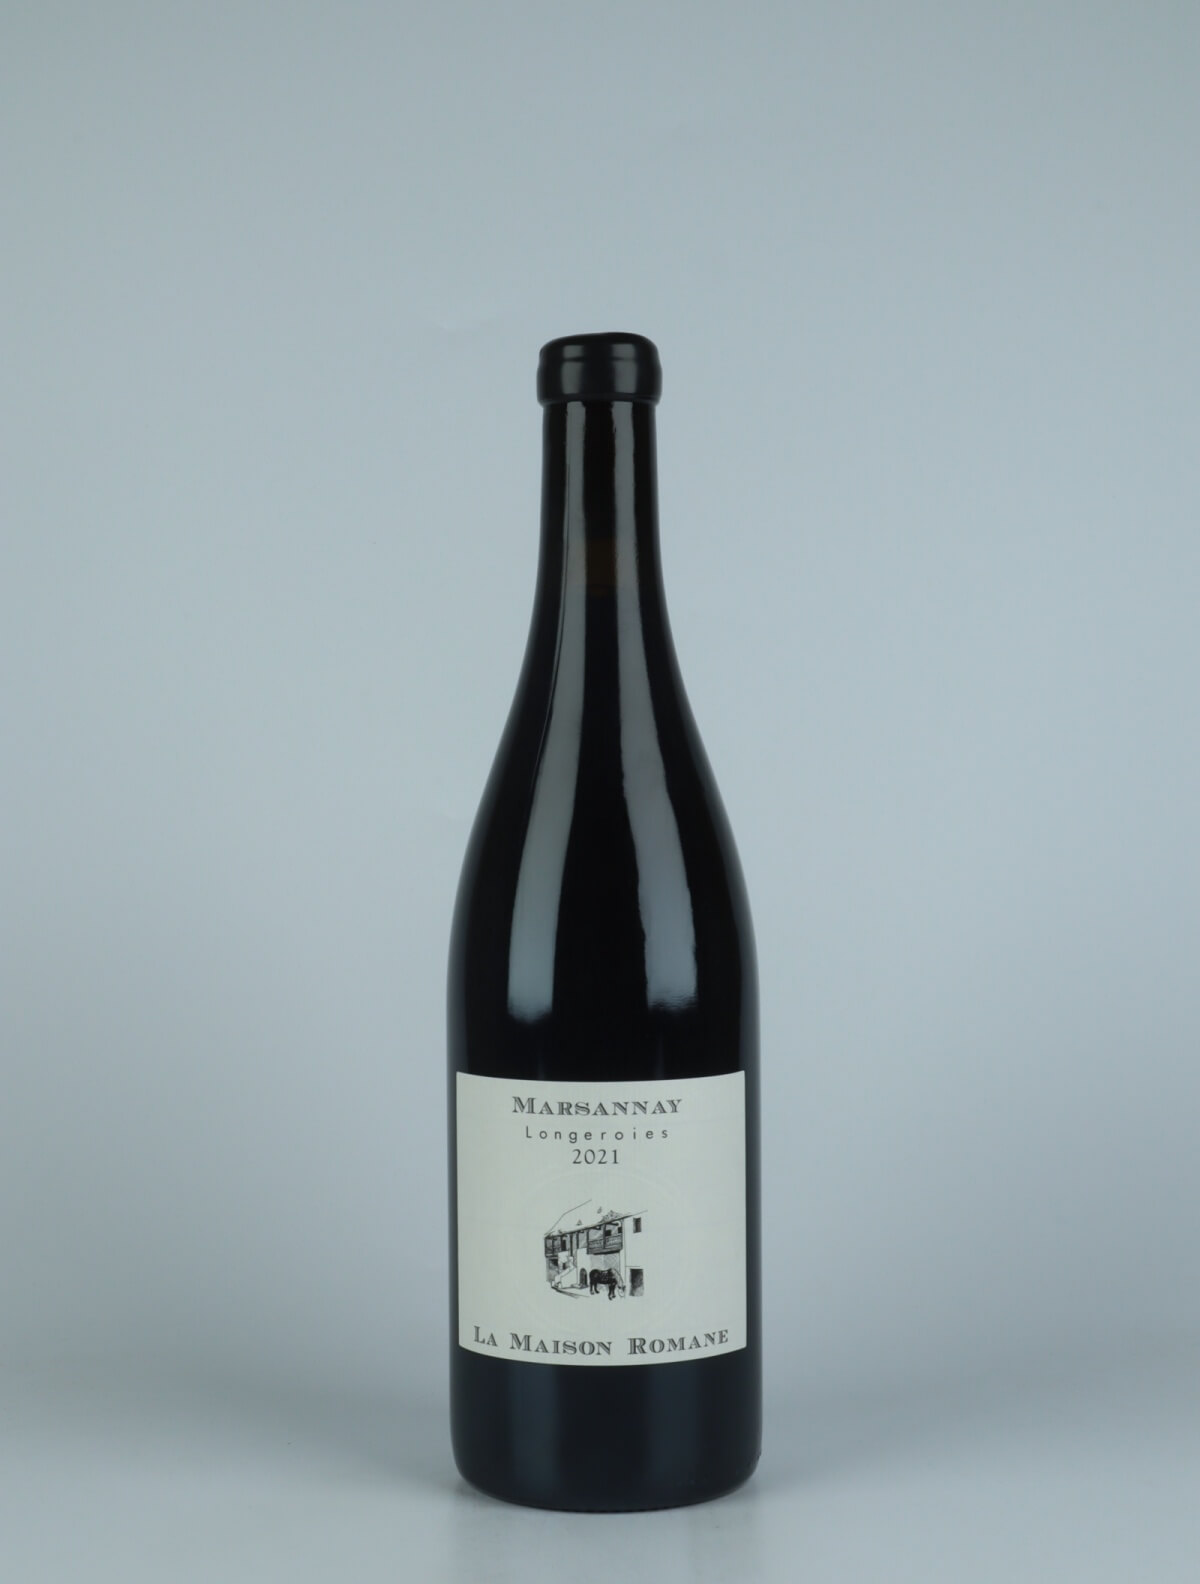 A bottle 2021 Marsannay - Longeroies Red wine from La Maison Romane, Burgundy in France